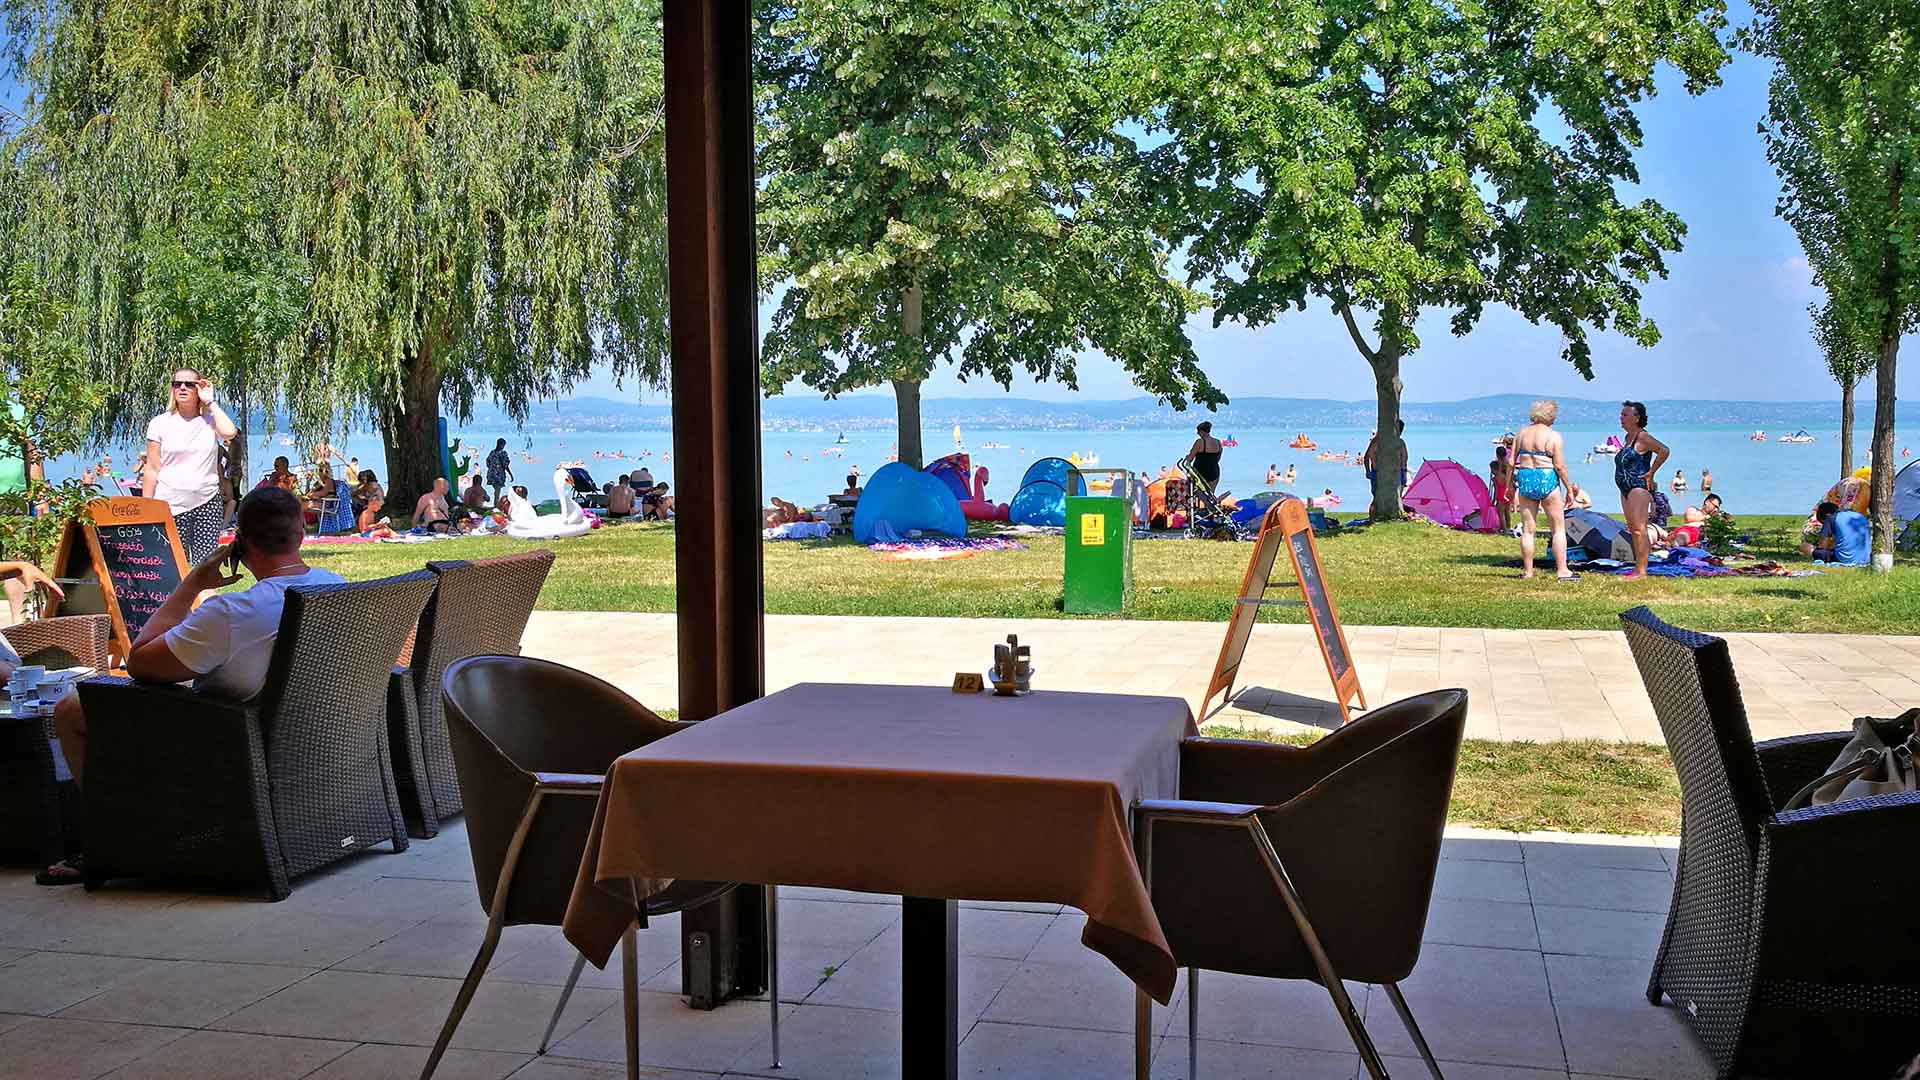 Zamárdi, Hotel Wellamarin, földszinti fedett teraszáról szép kilátás nyílik a Balatonra